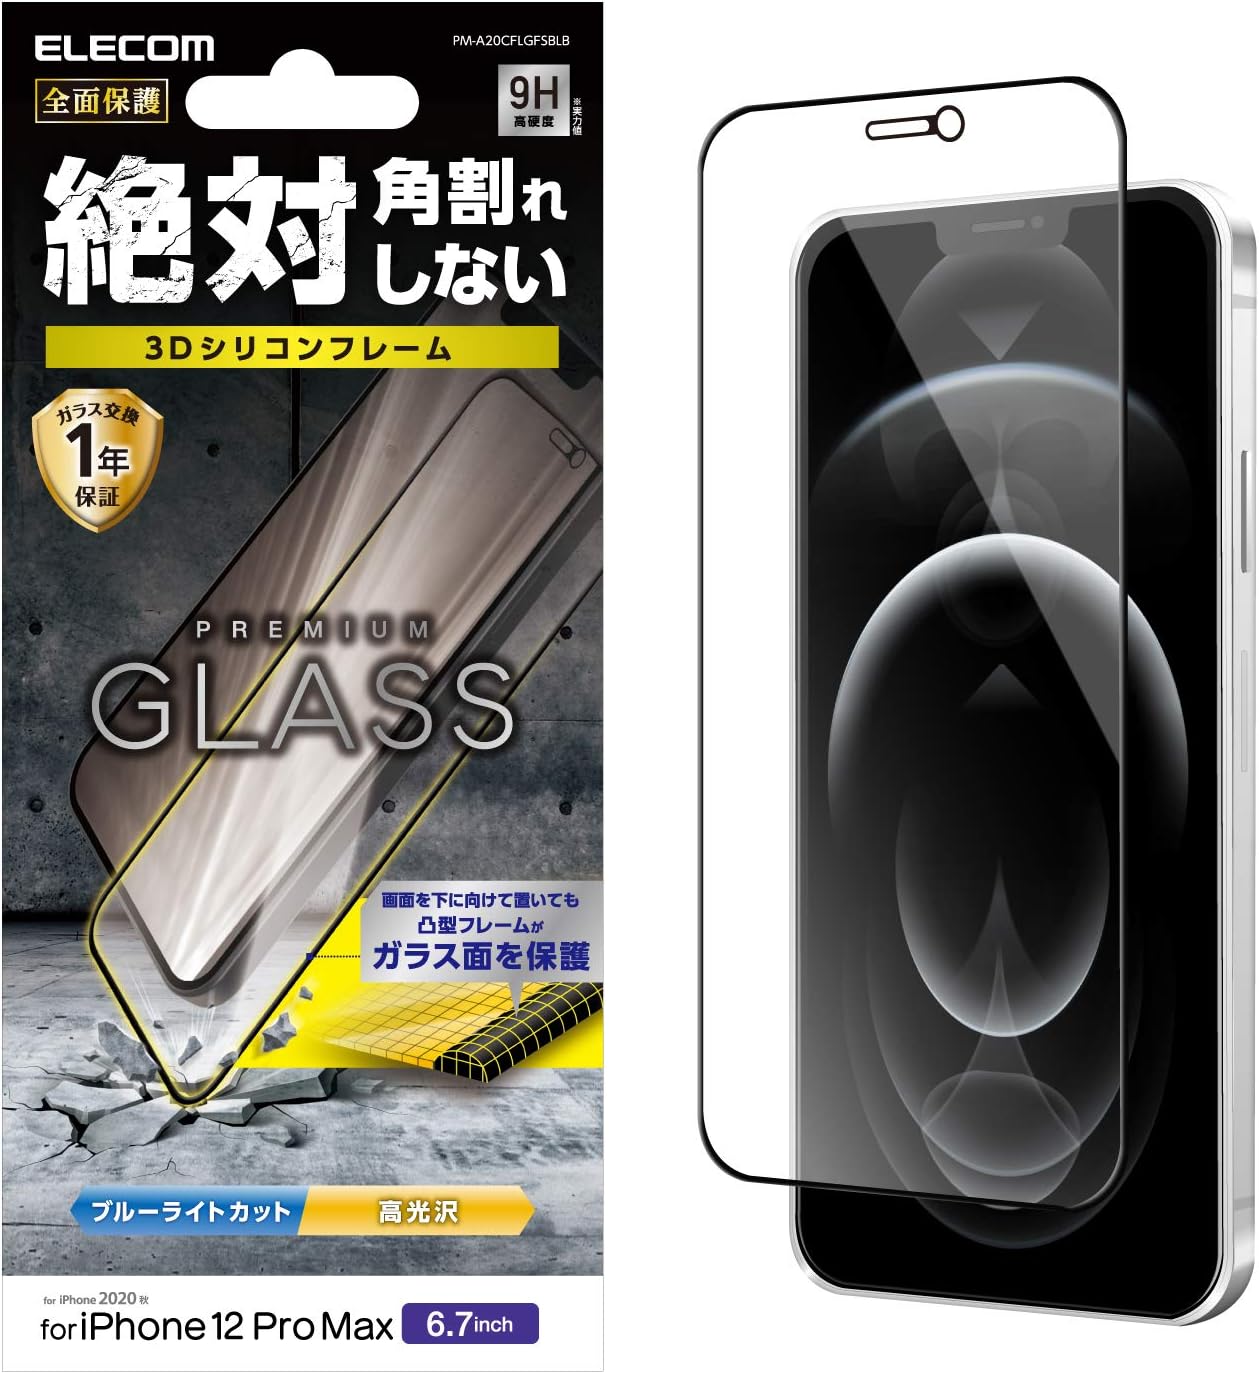 エレコム iPhone 12 Pro Max フィルム 強化ガラス 薄さ 0.33mm ブルーライトカット ブラック PM-A20CFLGFSBLB